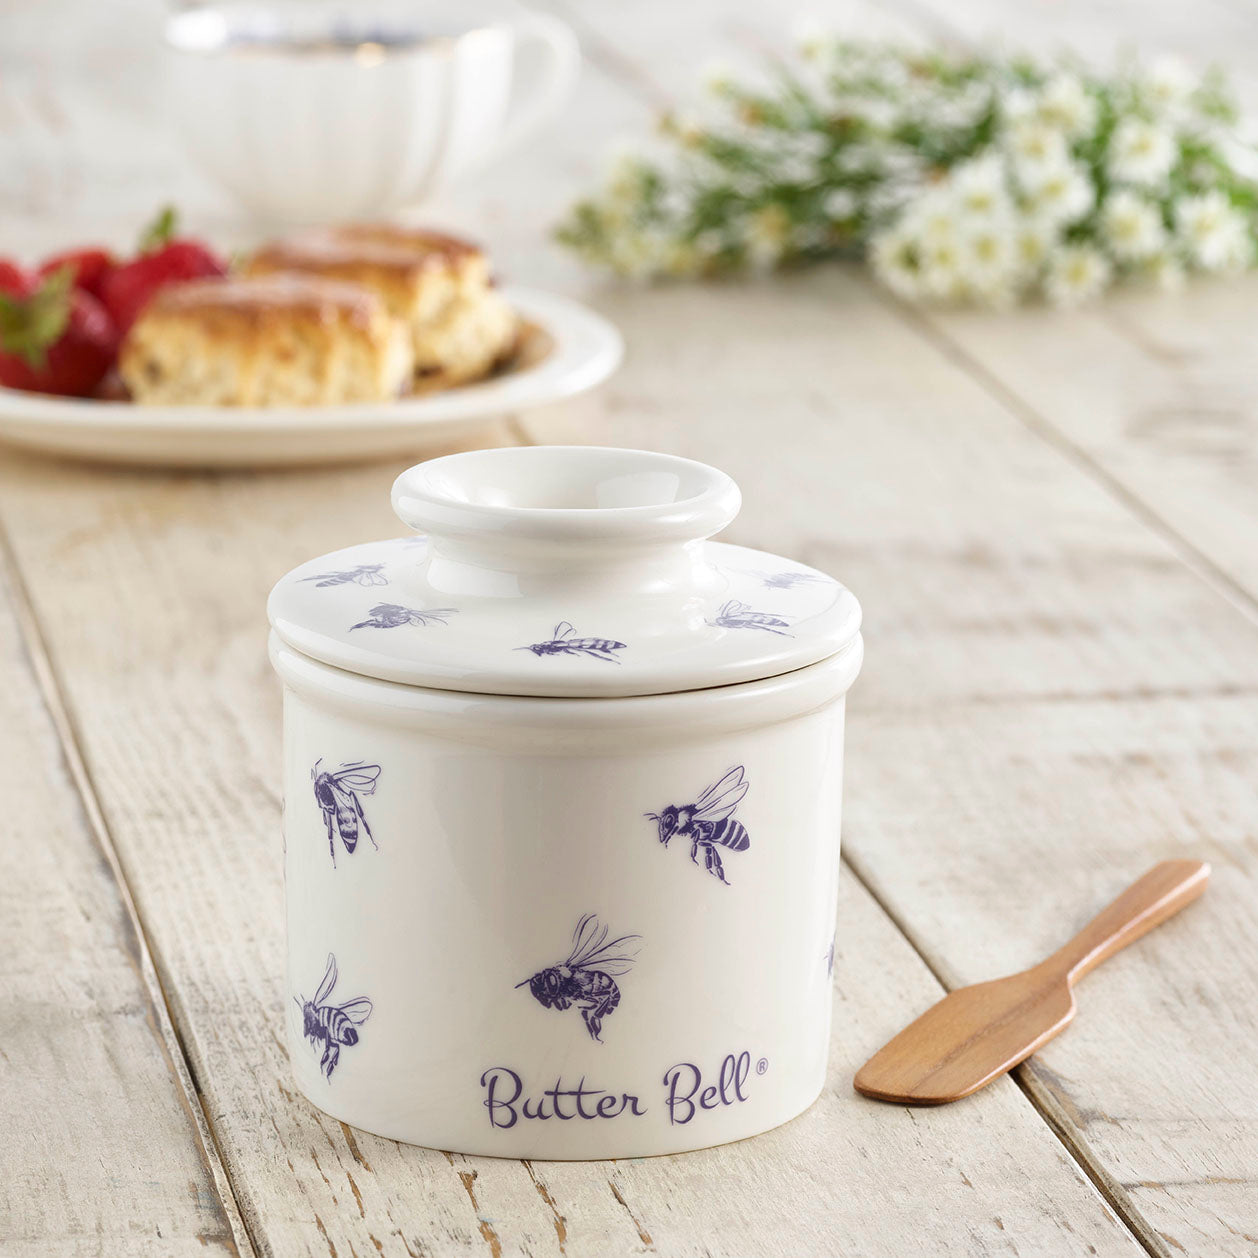 Official Butter Bell® Store - Original ButterBell Crock